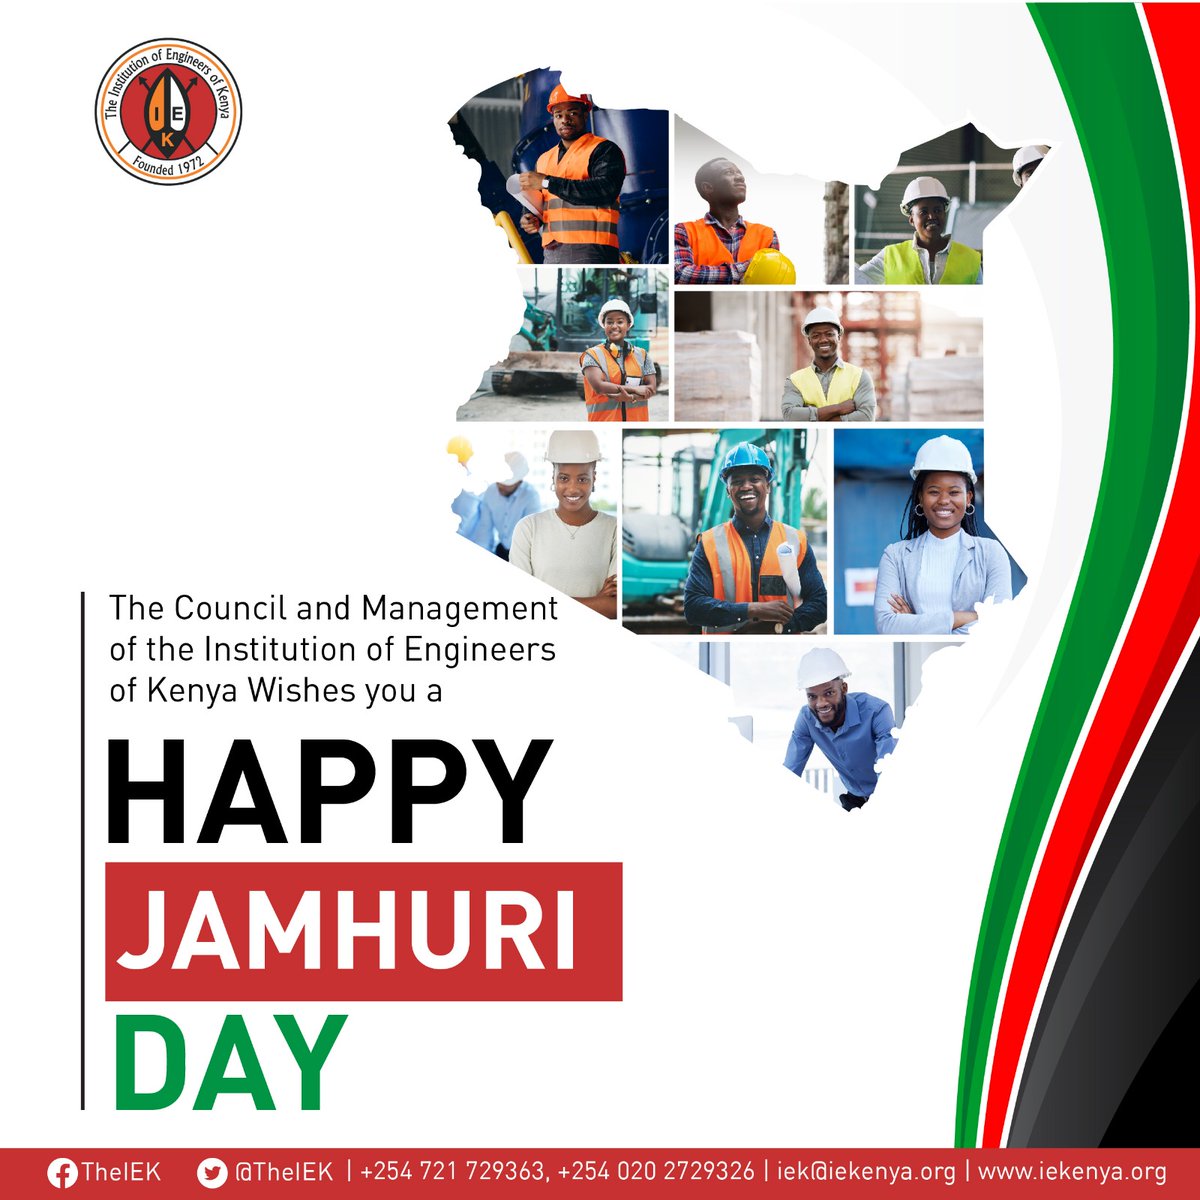 We wish you a happy Jamhuri day.